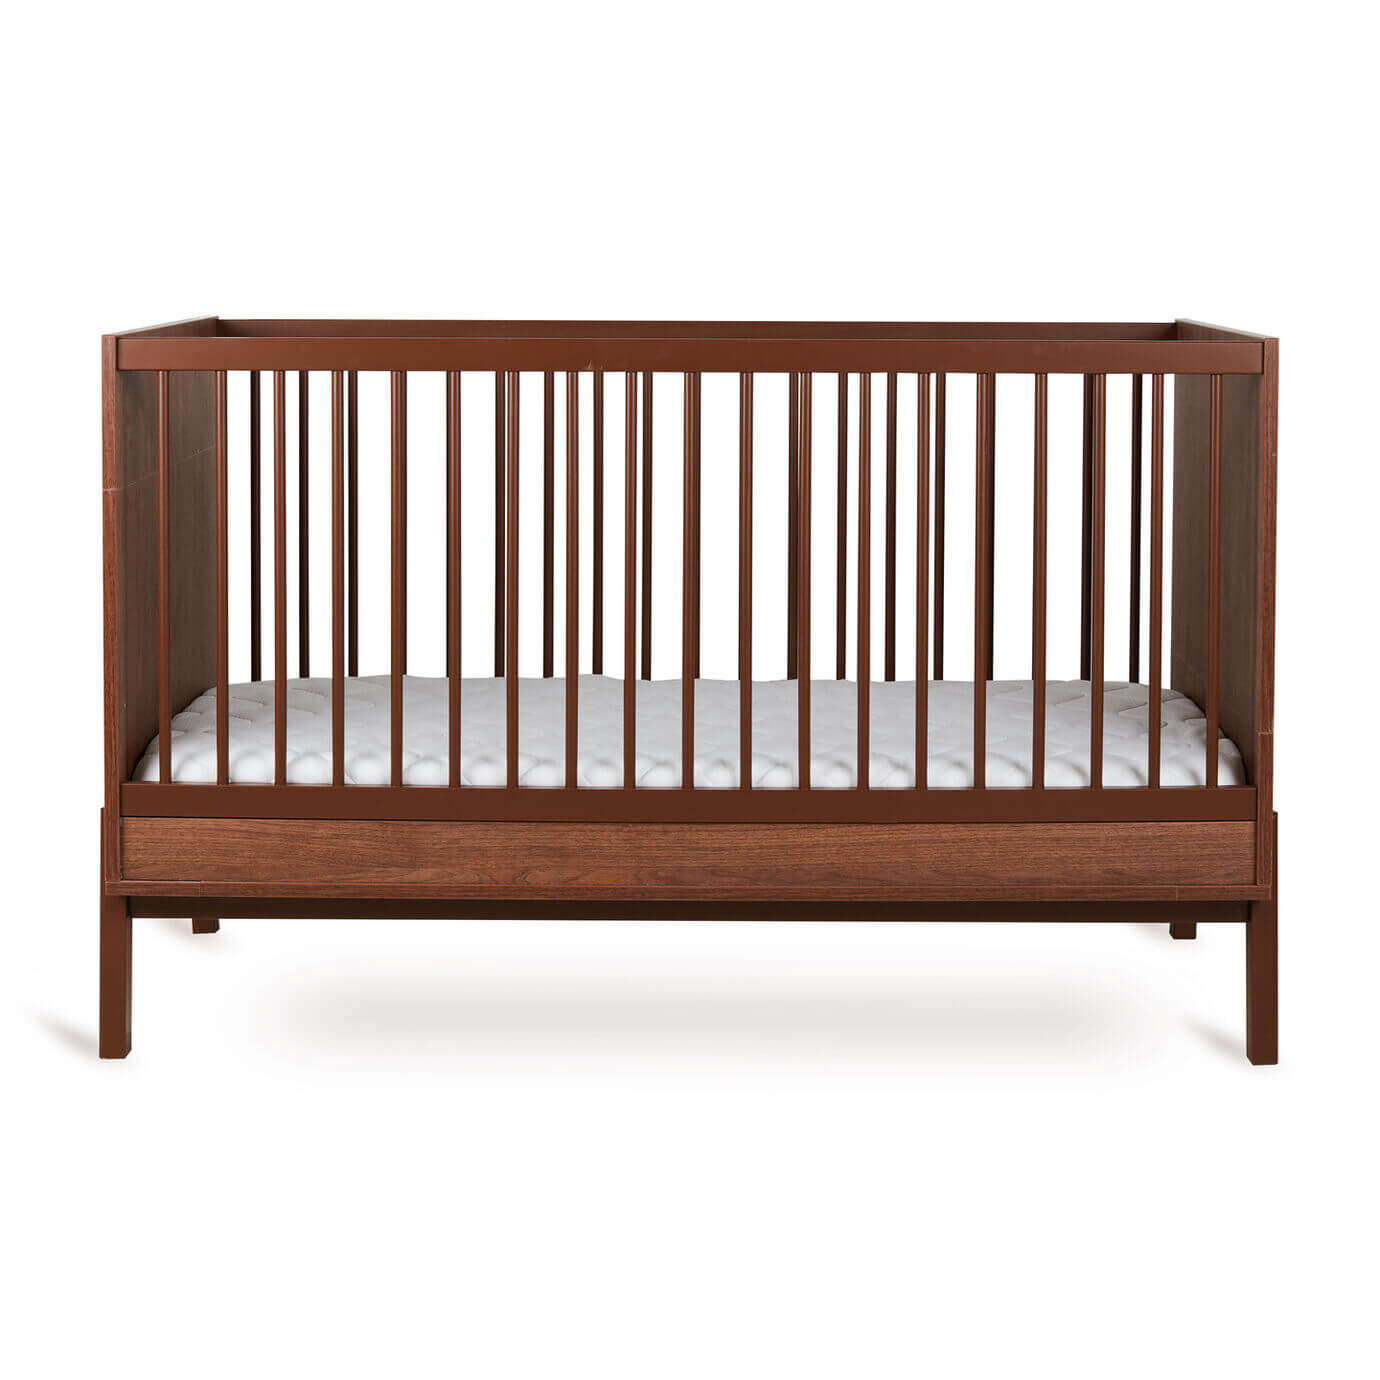 Lit à barreaux ASHI Châtaignier 140x70cm Quax - Cribs & Toddler Beds par Quax